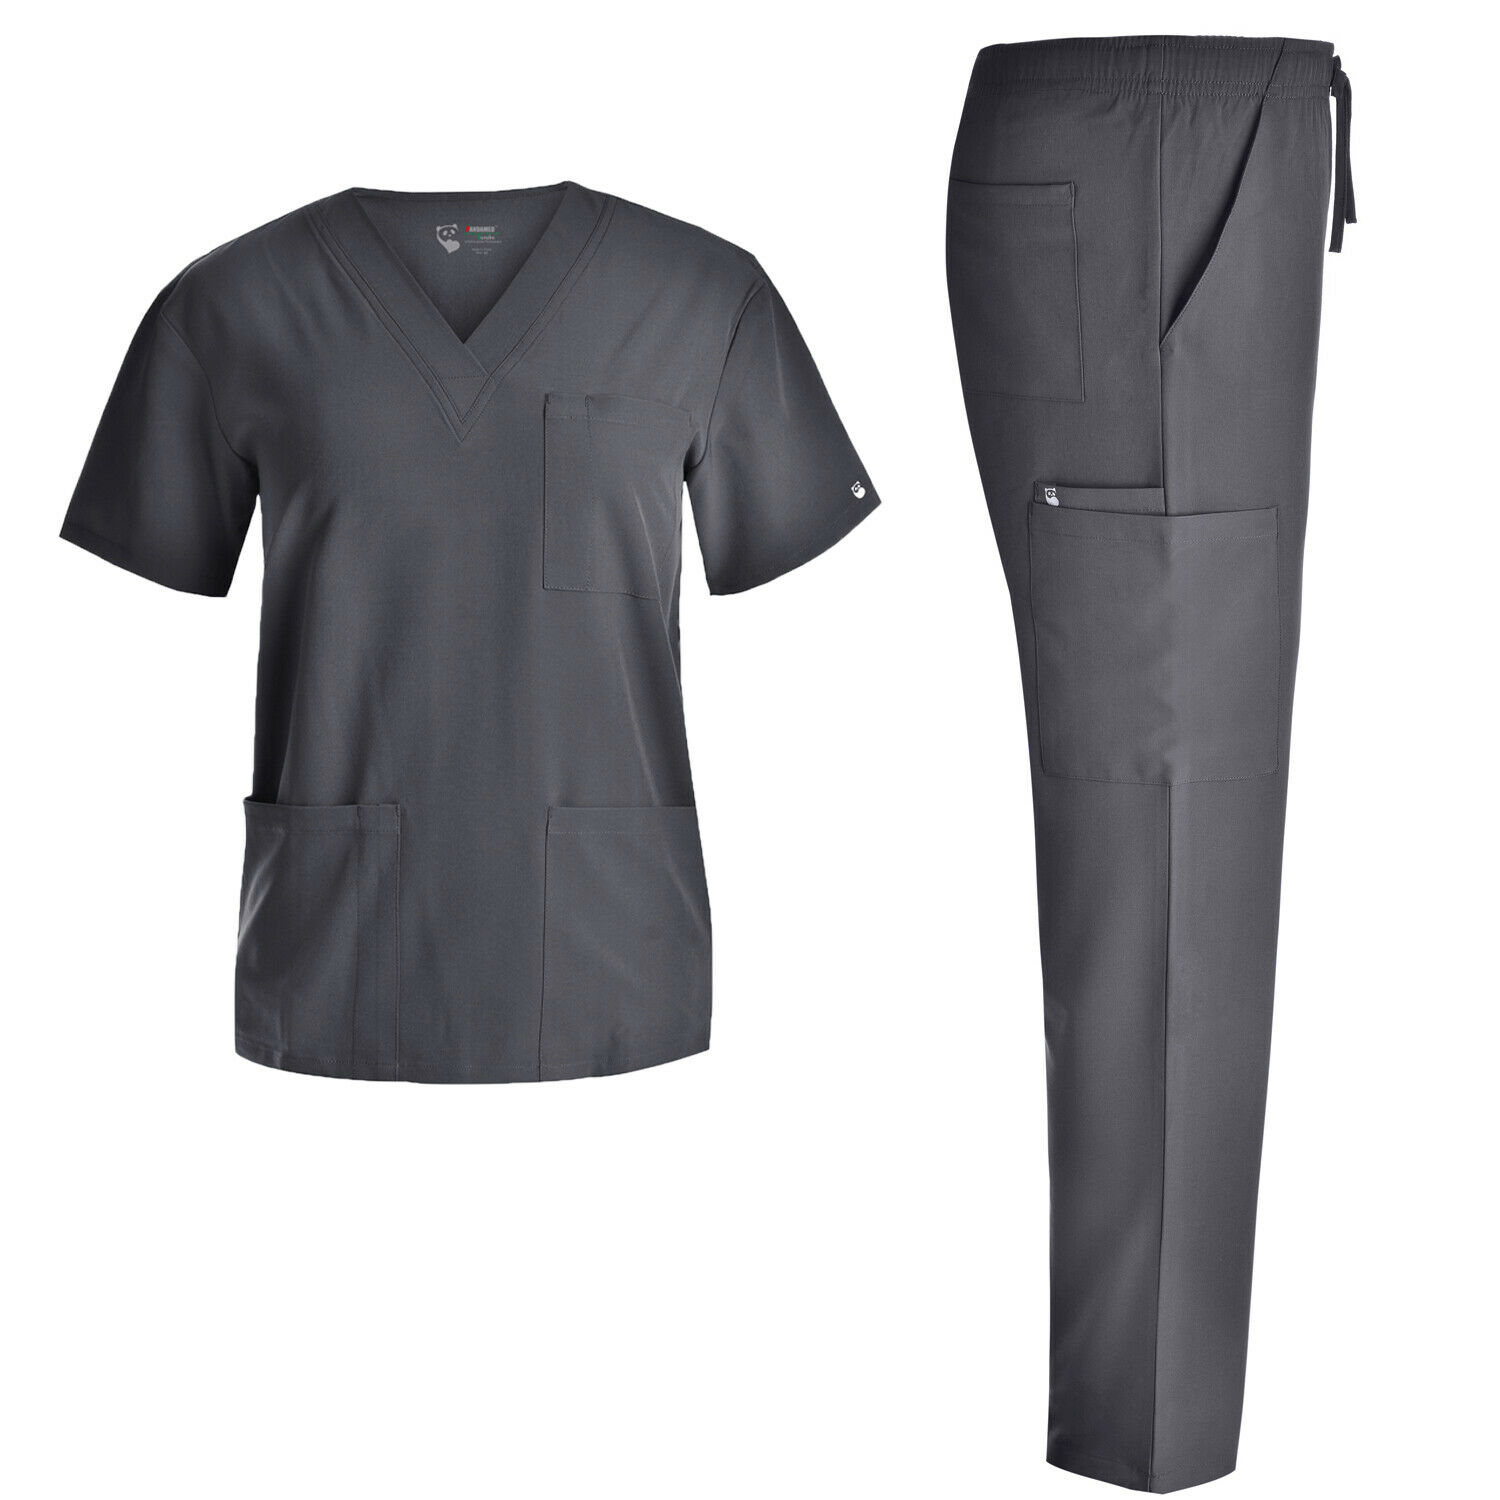 4 Way-stretch Nursing Scrubs Set - Medical Uniform Women Stretch Workwear Jyc336